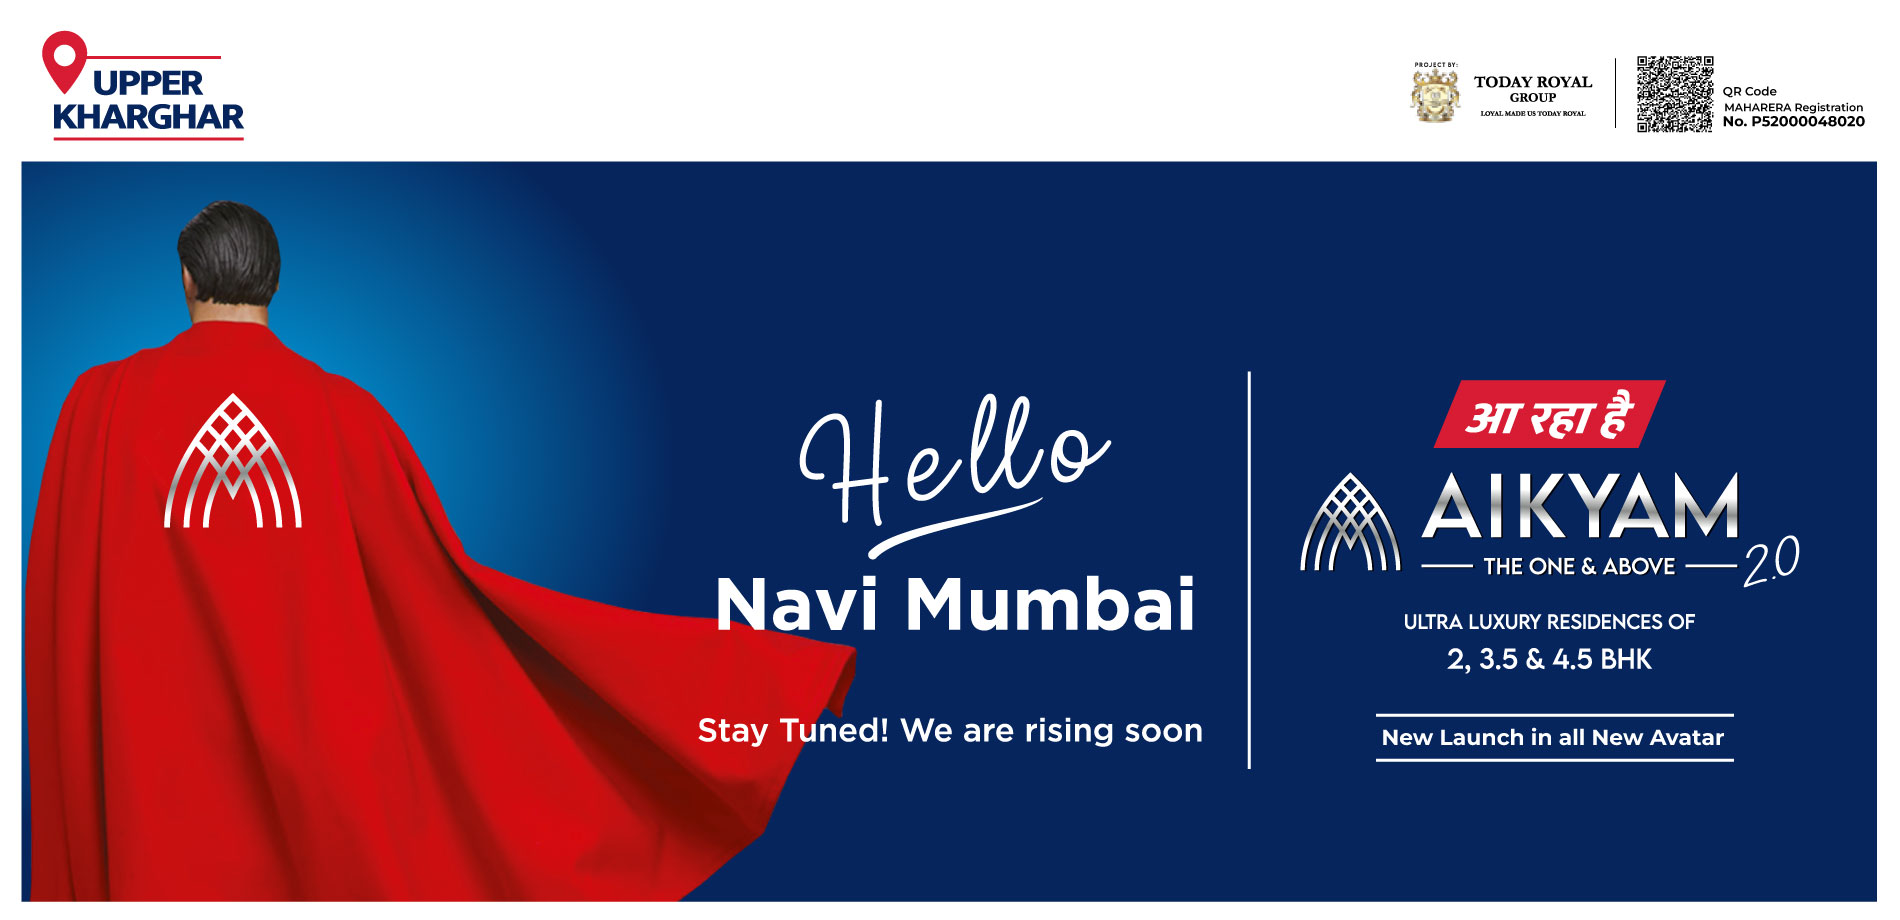 Royal Aikyam - Hello Navi Mumbai web